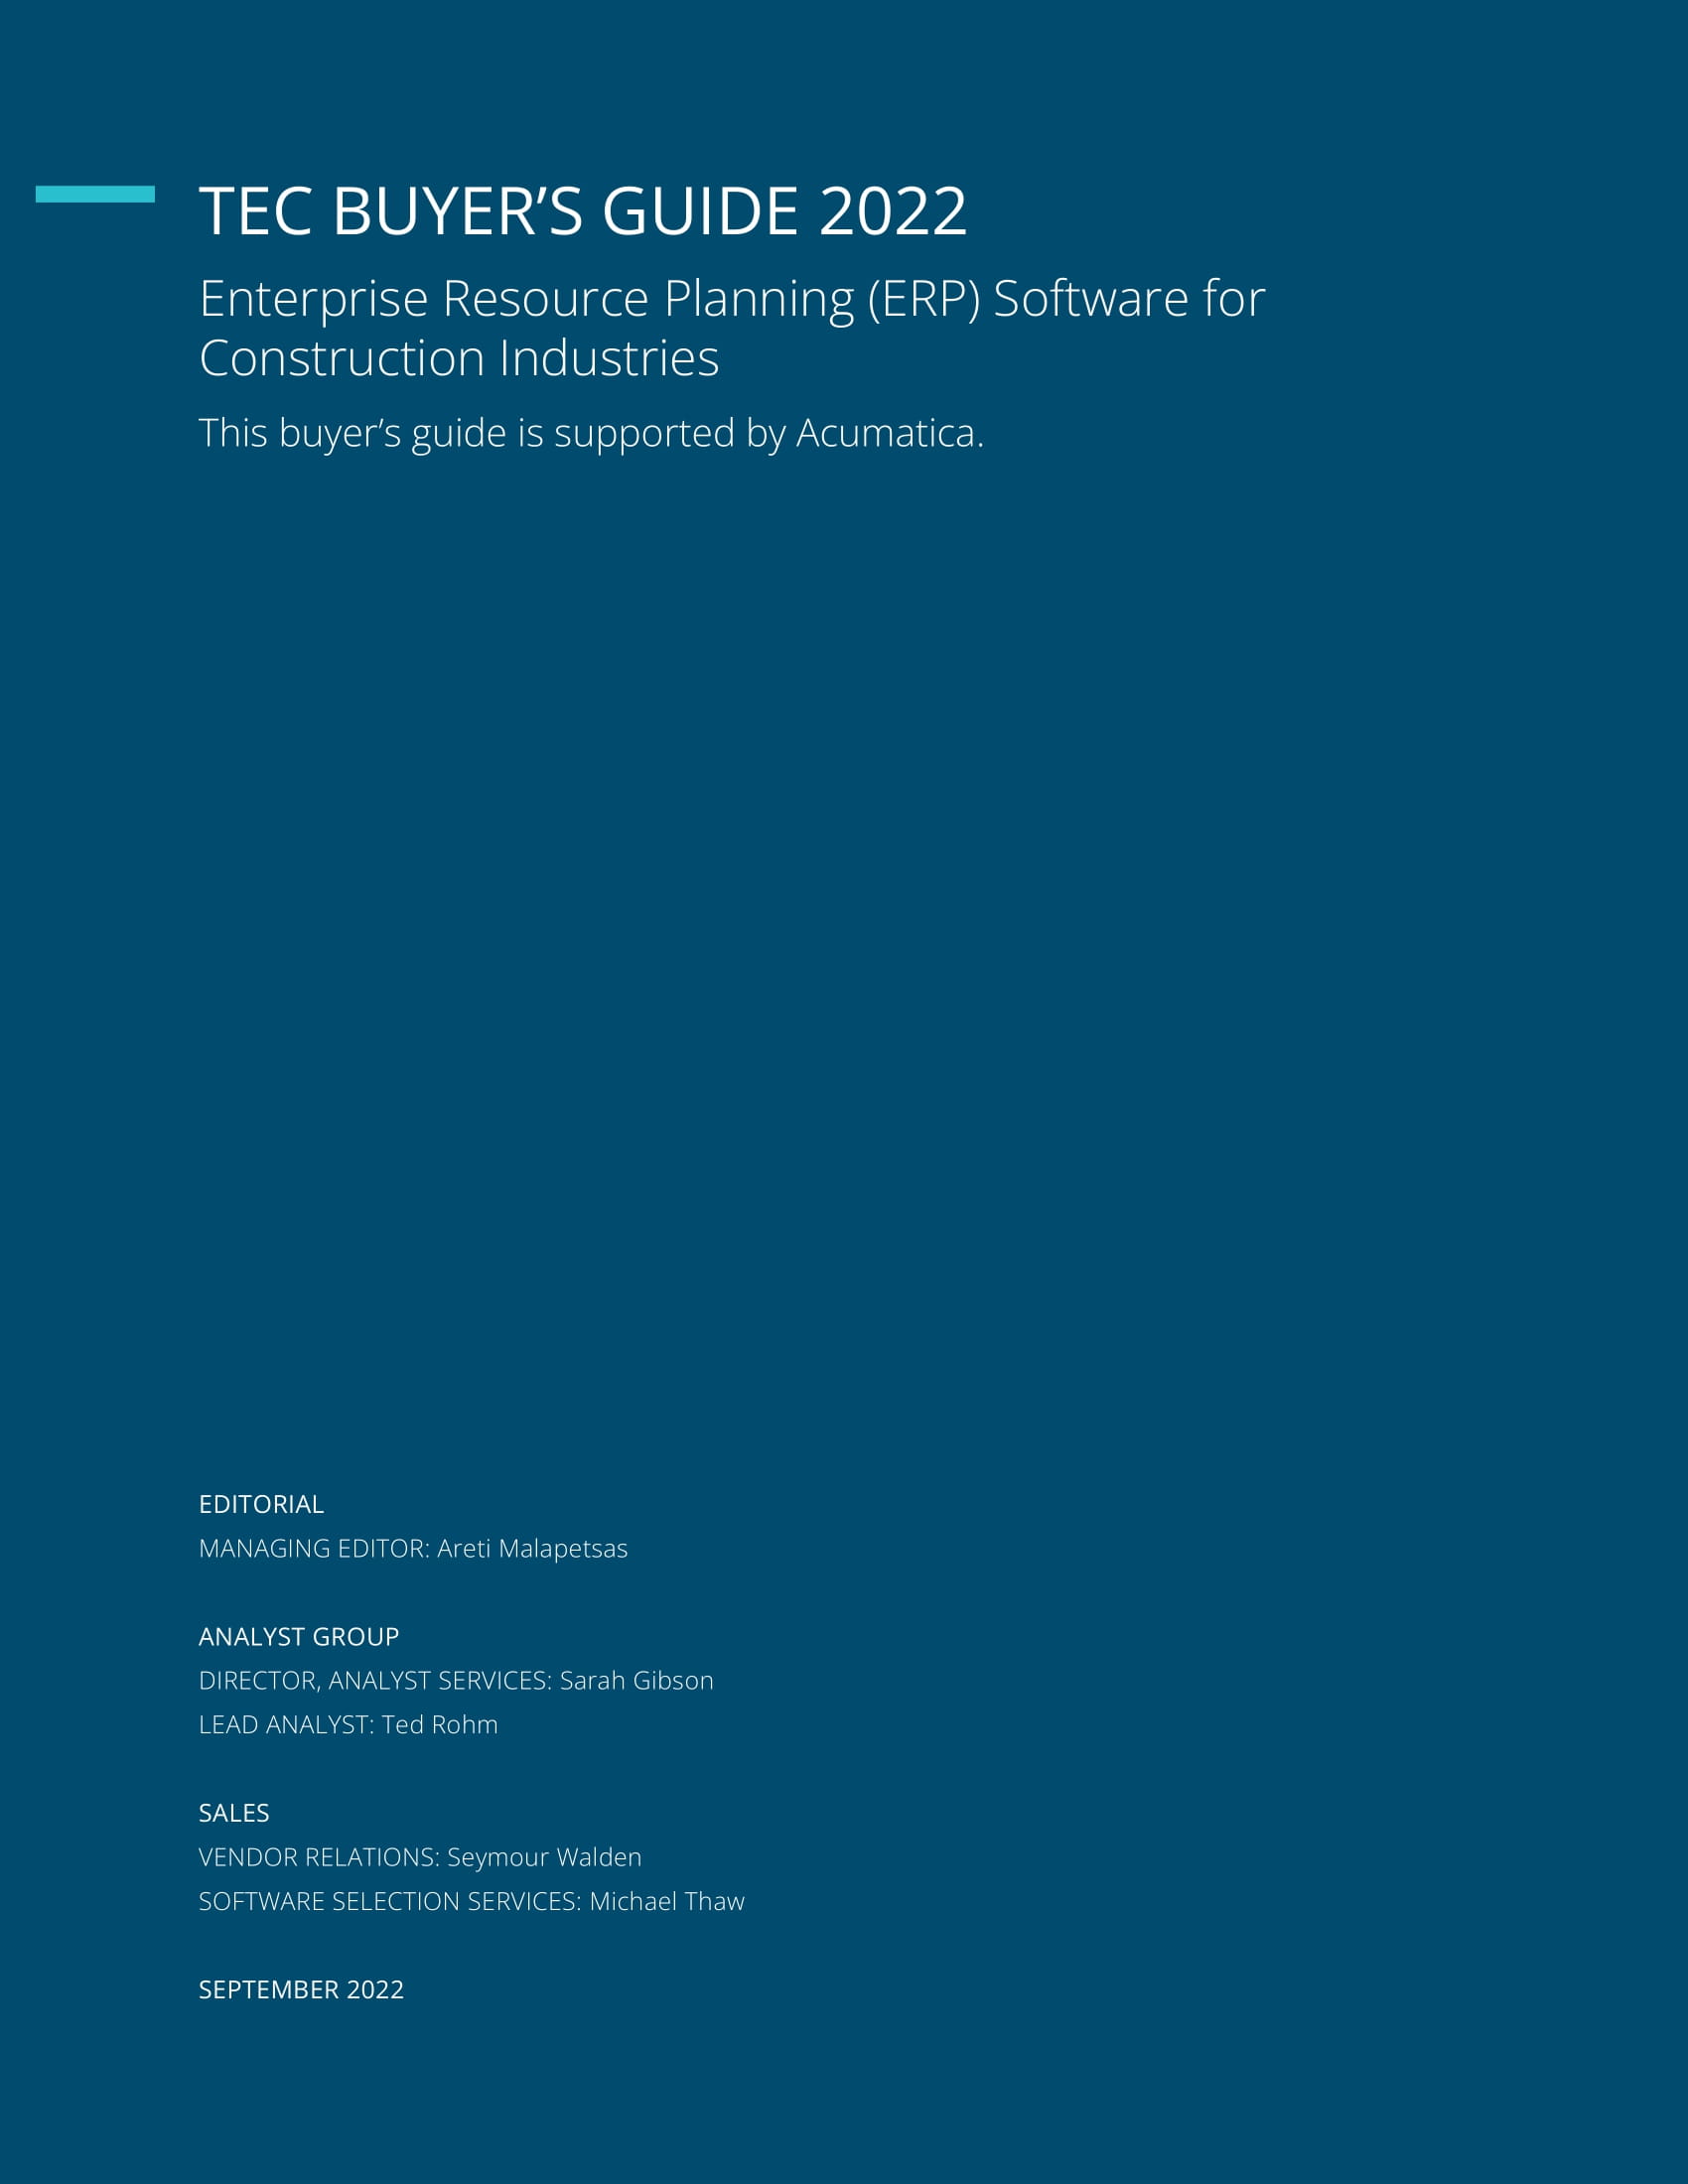 La Guía del comprador de software ERP para el sector de la construcción de Technology Evaluation Centers (TEC) presenta Acumatica, página 1